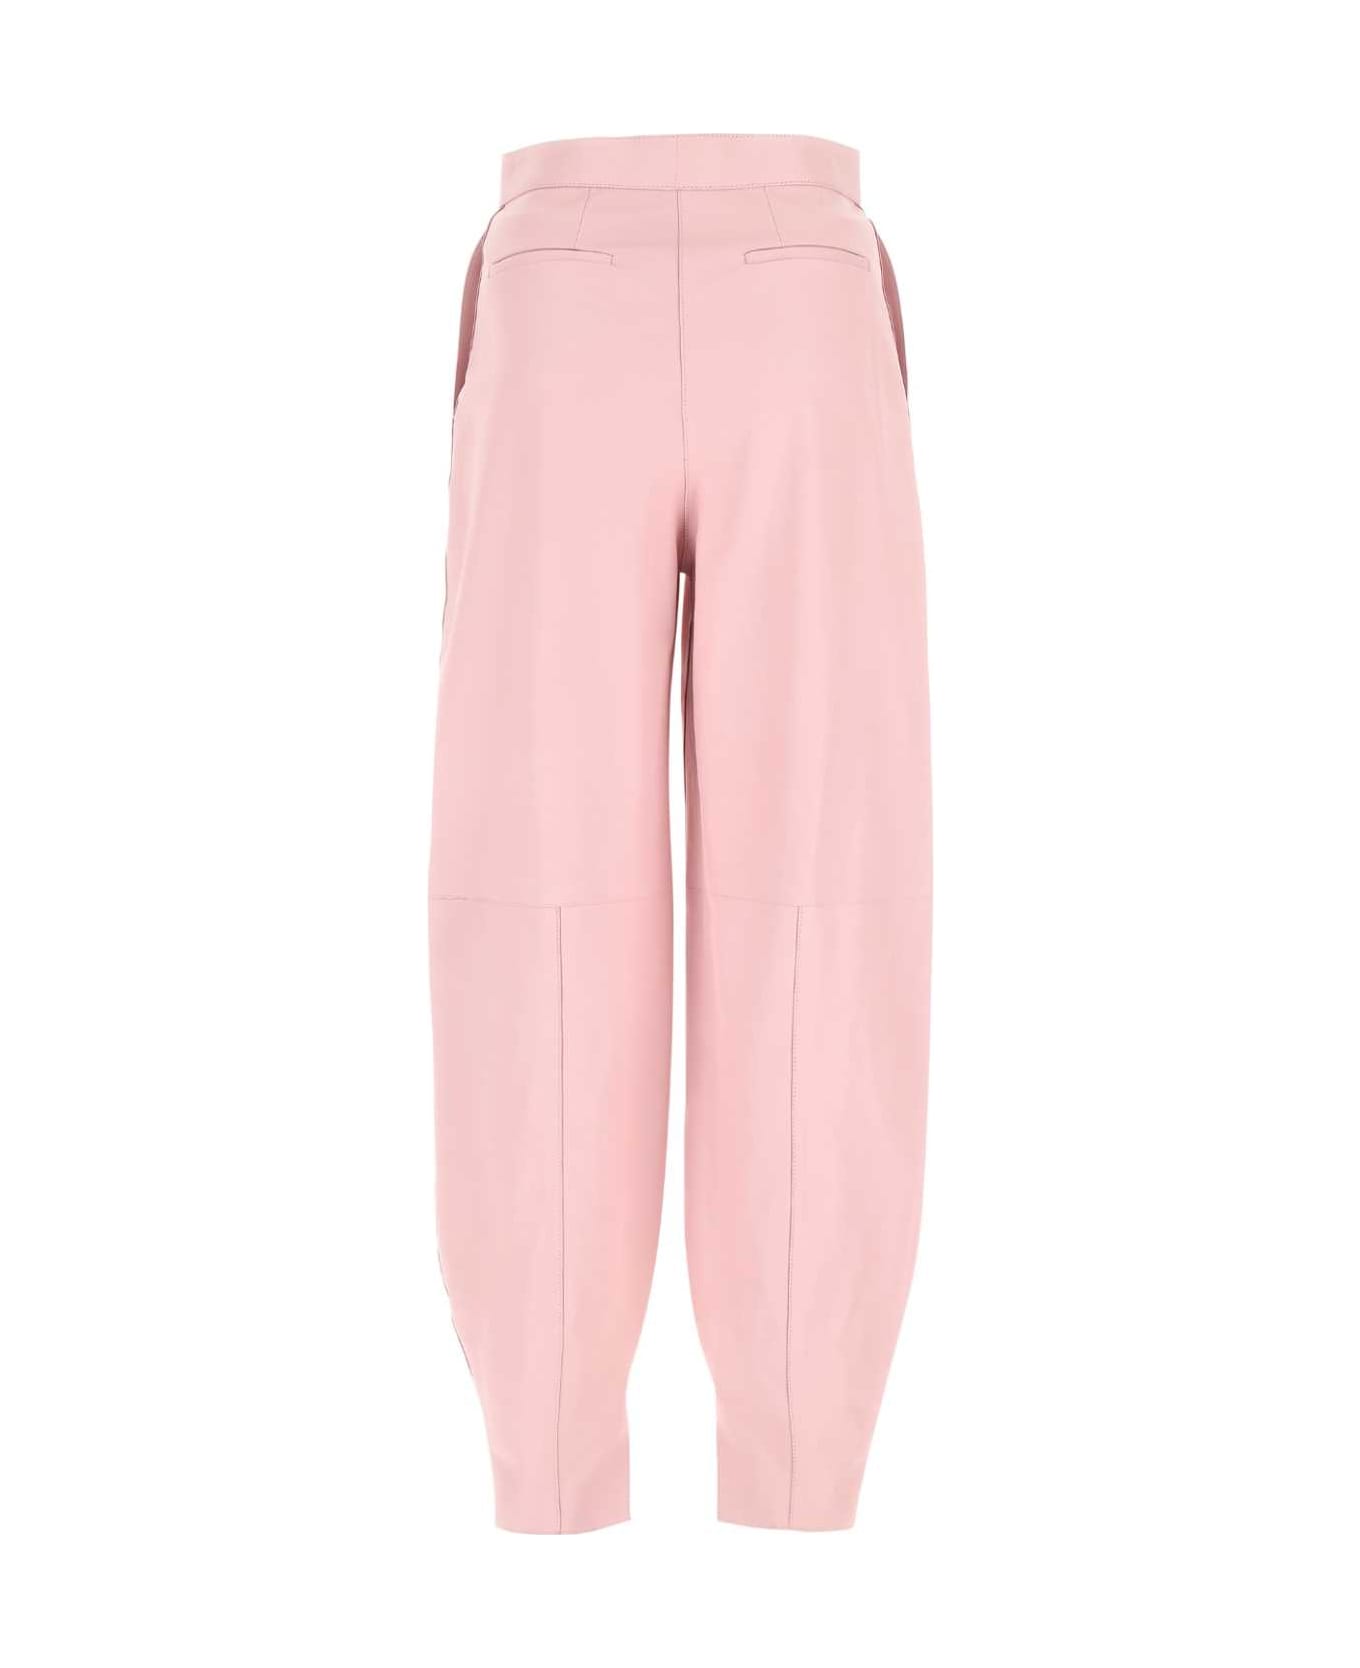 Loewe handbag Pastel Pink Leather Pant - LIGHTPINK